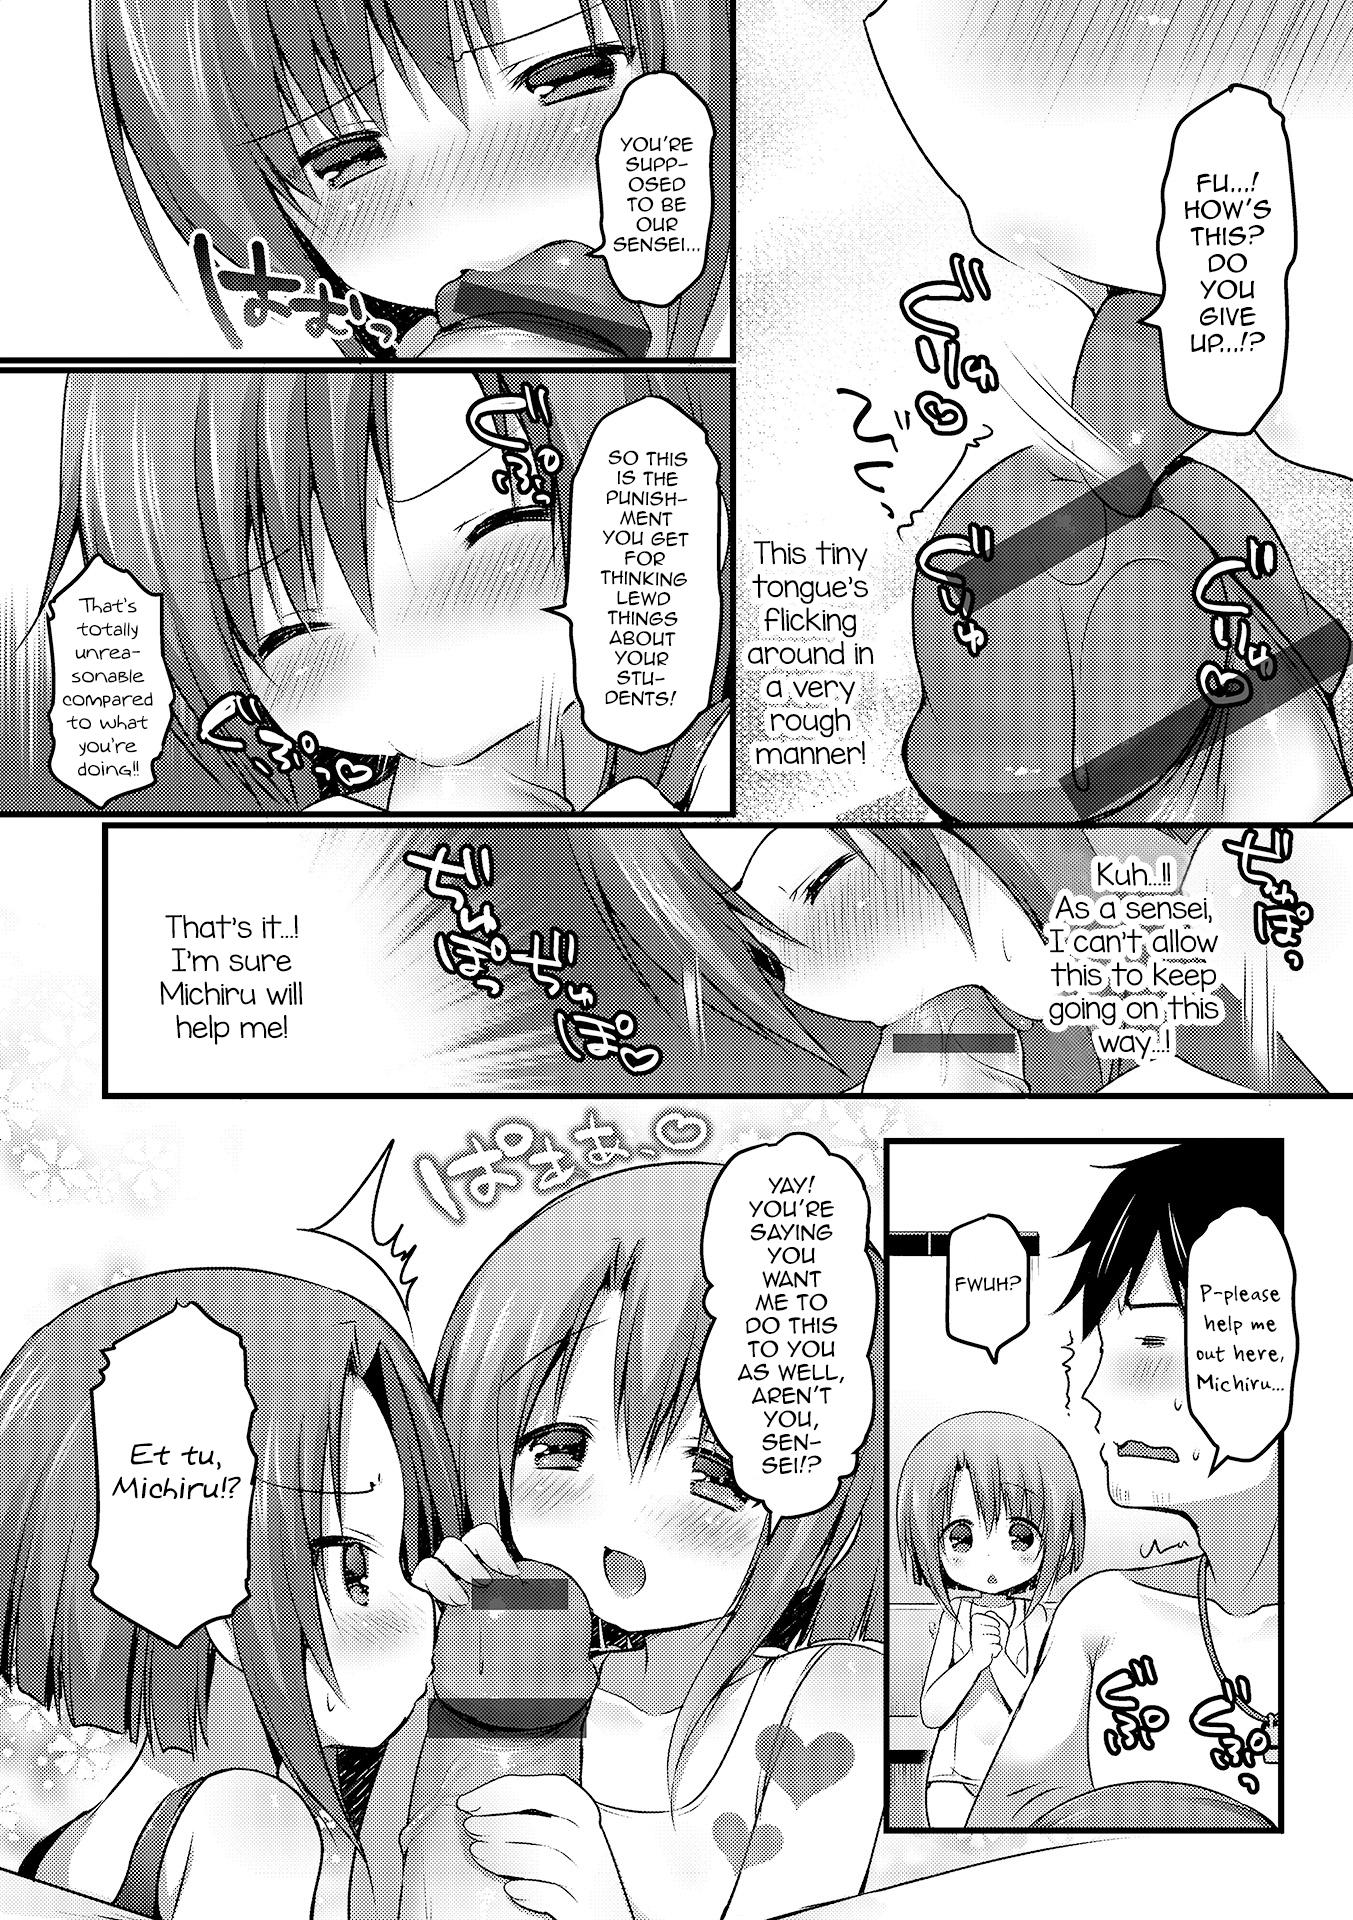 Letsdoeit Shirokuro tsukete kudasai! Foot Fetish - Page 4